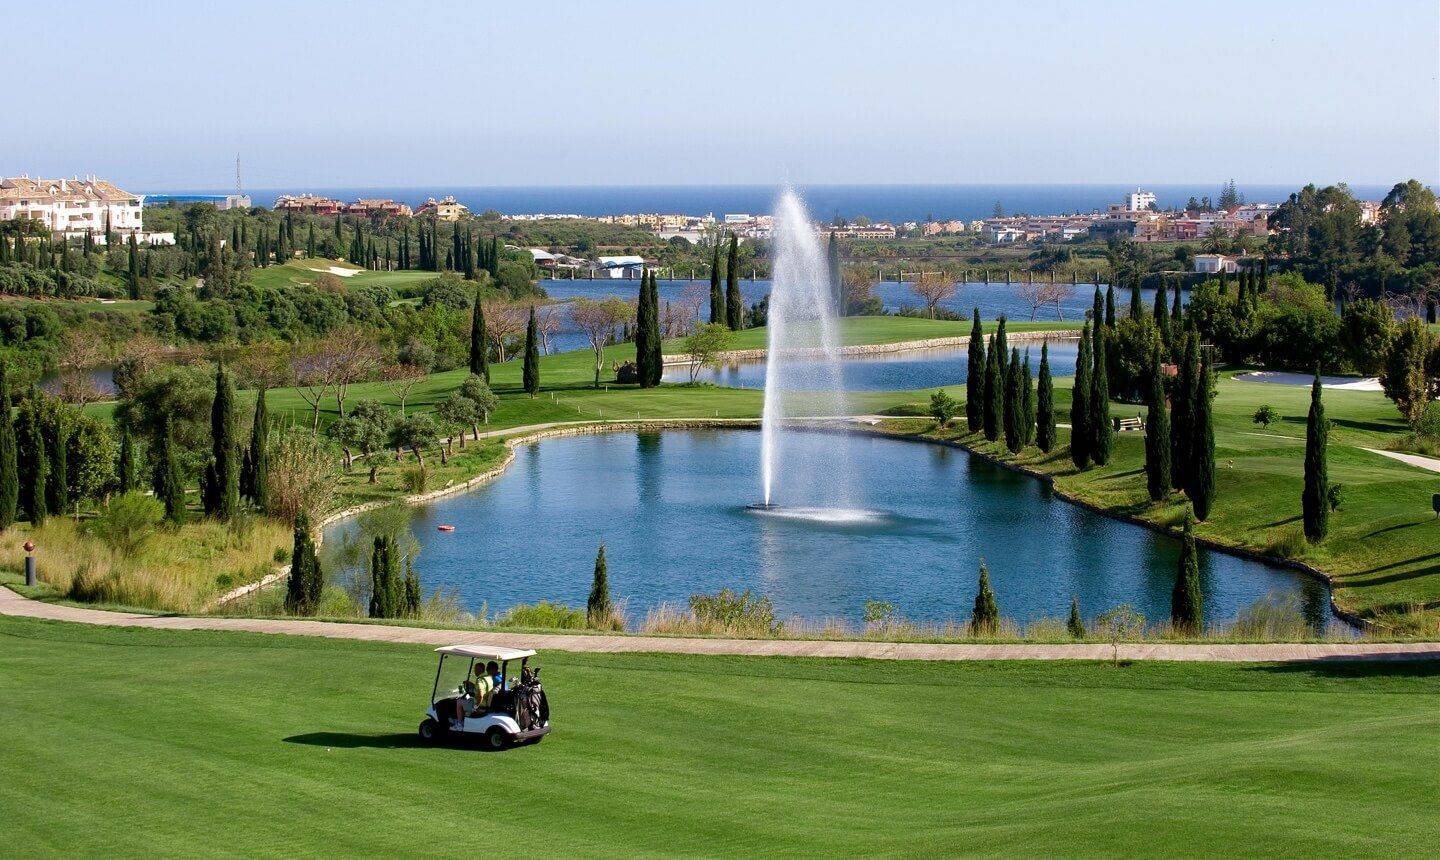 Golf Marbella Club Villa Padierna-Lugares imprescibdibles que visitar en Marbella